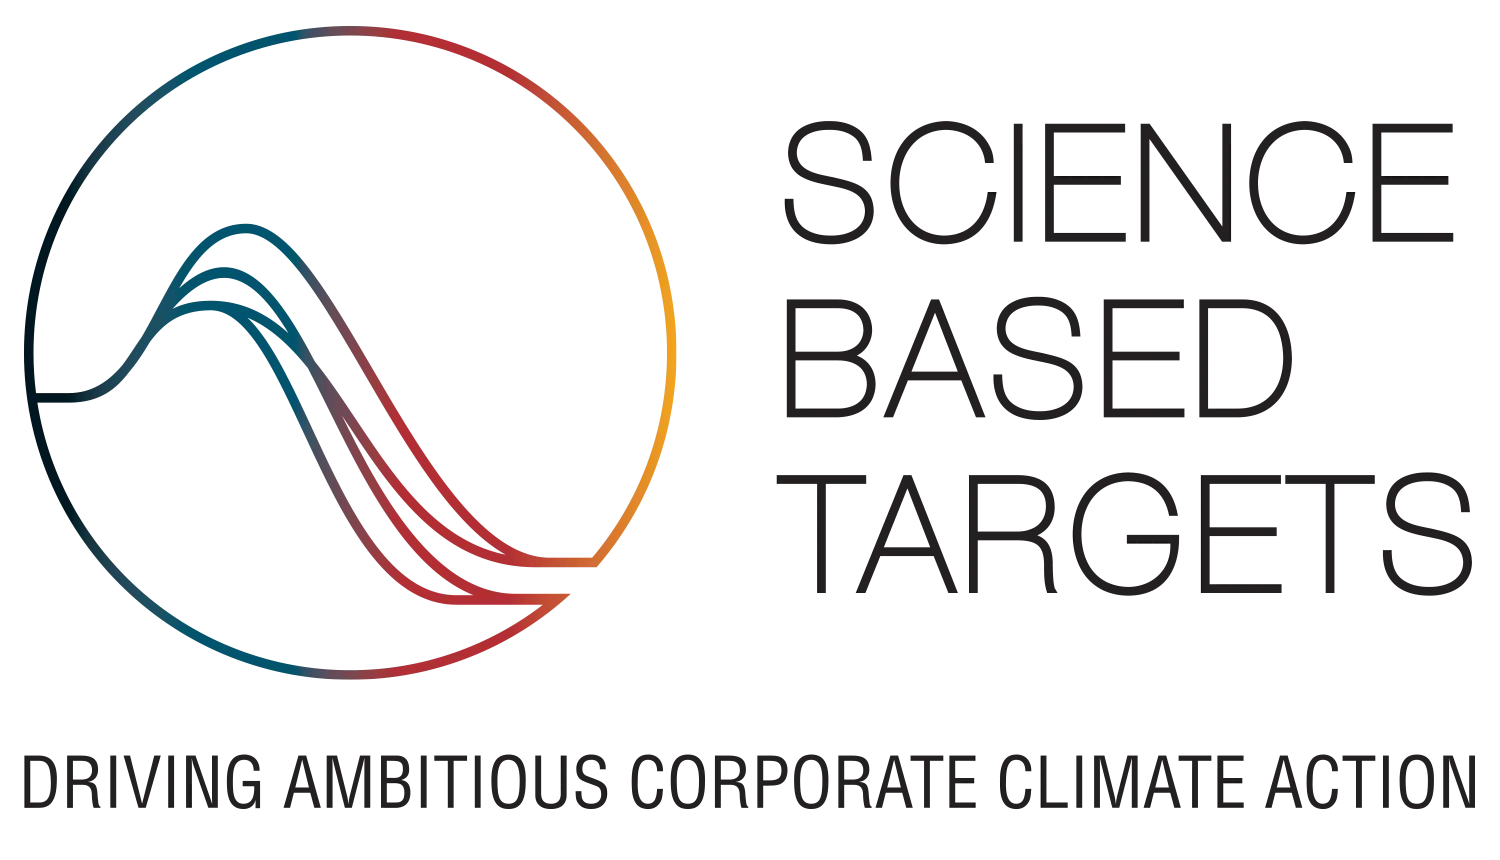 Science Based Targets Logo